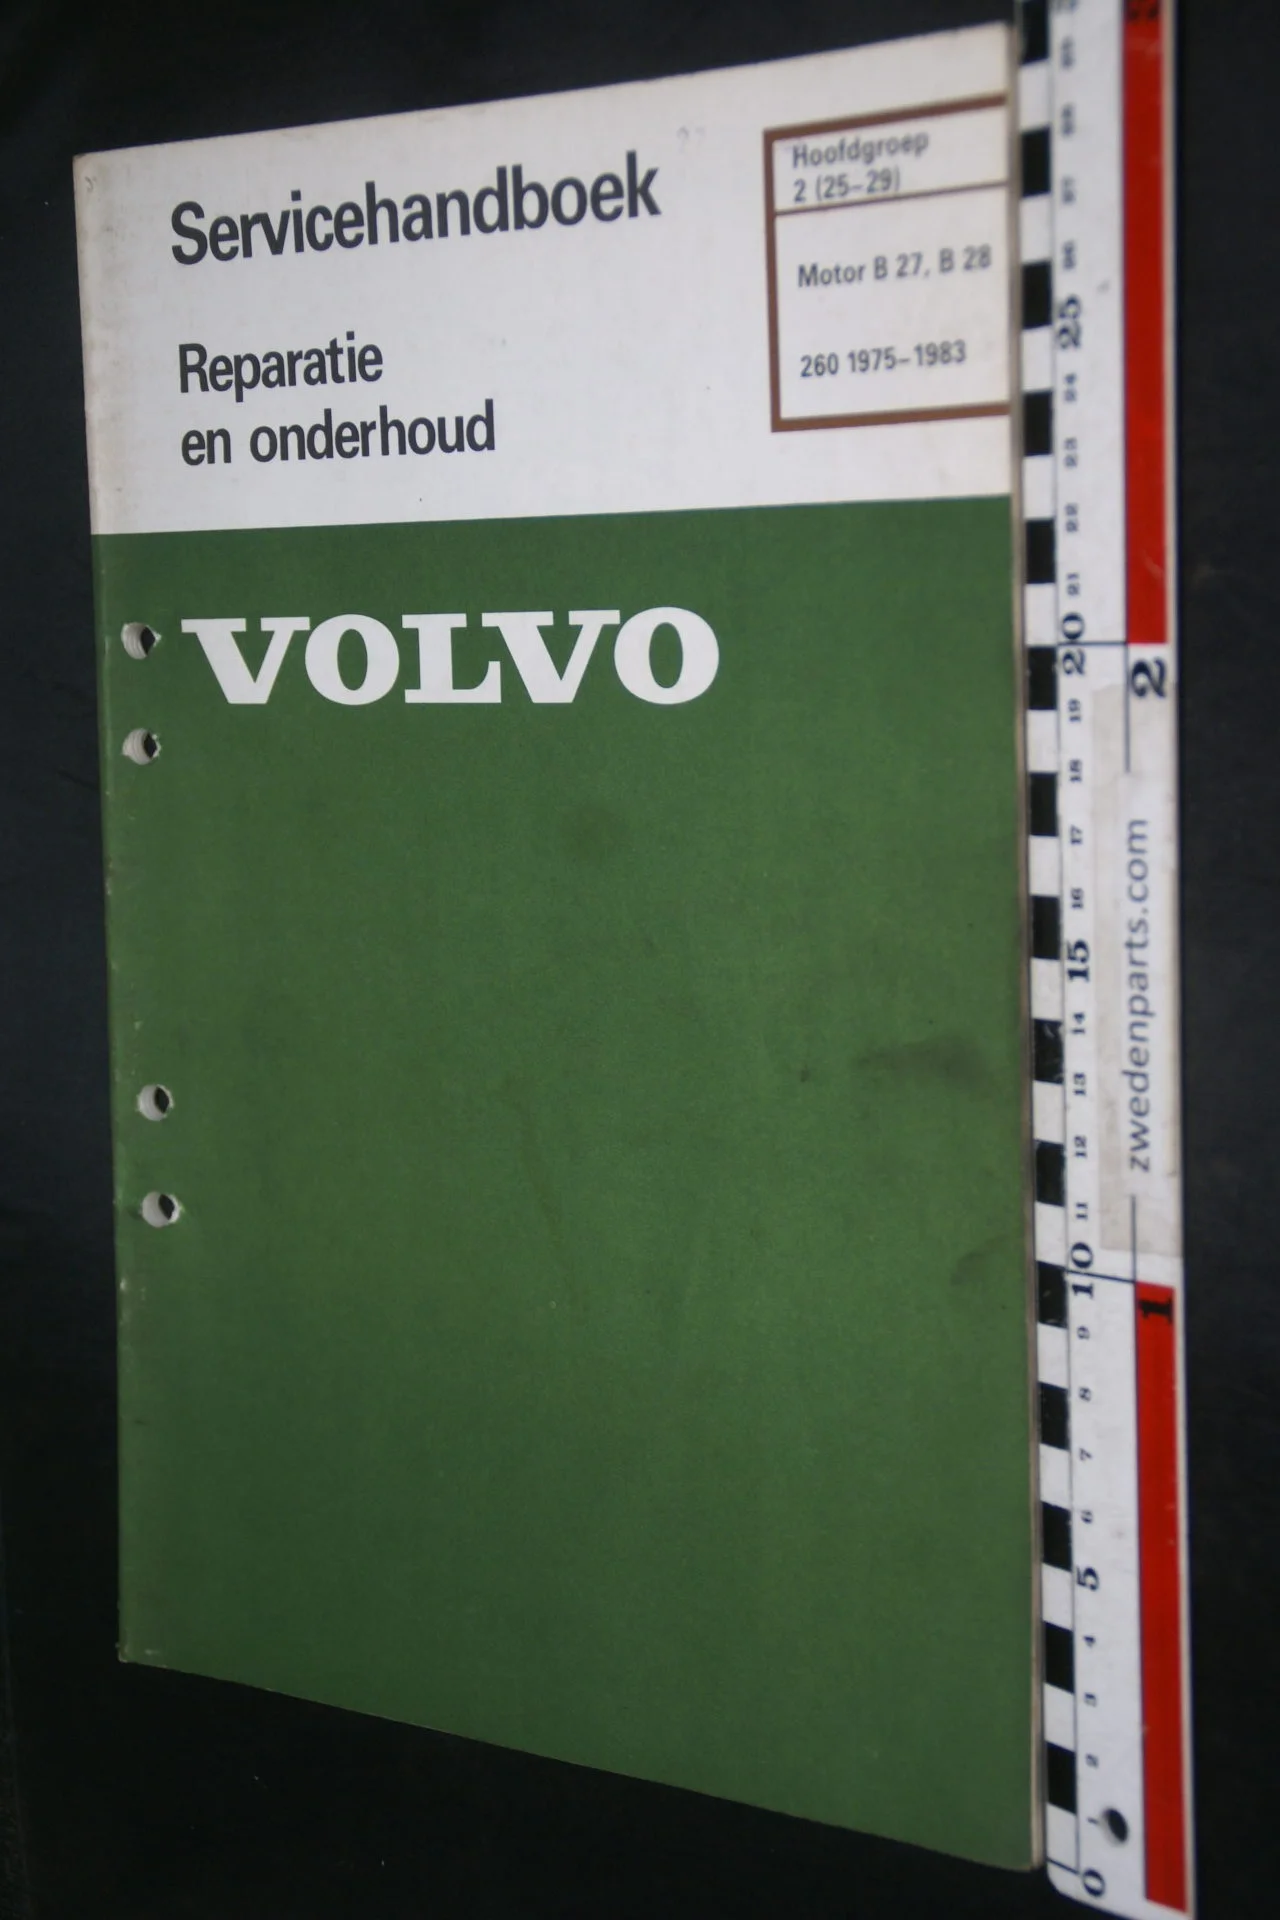 DSC08469 1983 origineel Volvo 260 servicehandboek  2 (25-29) motor B27, B28 1 van 800 TP 30565-1